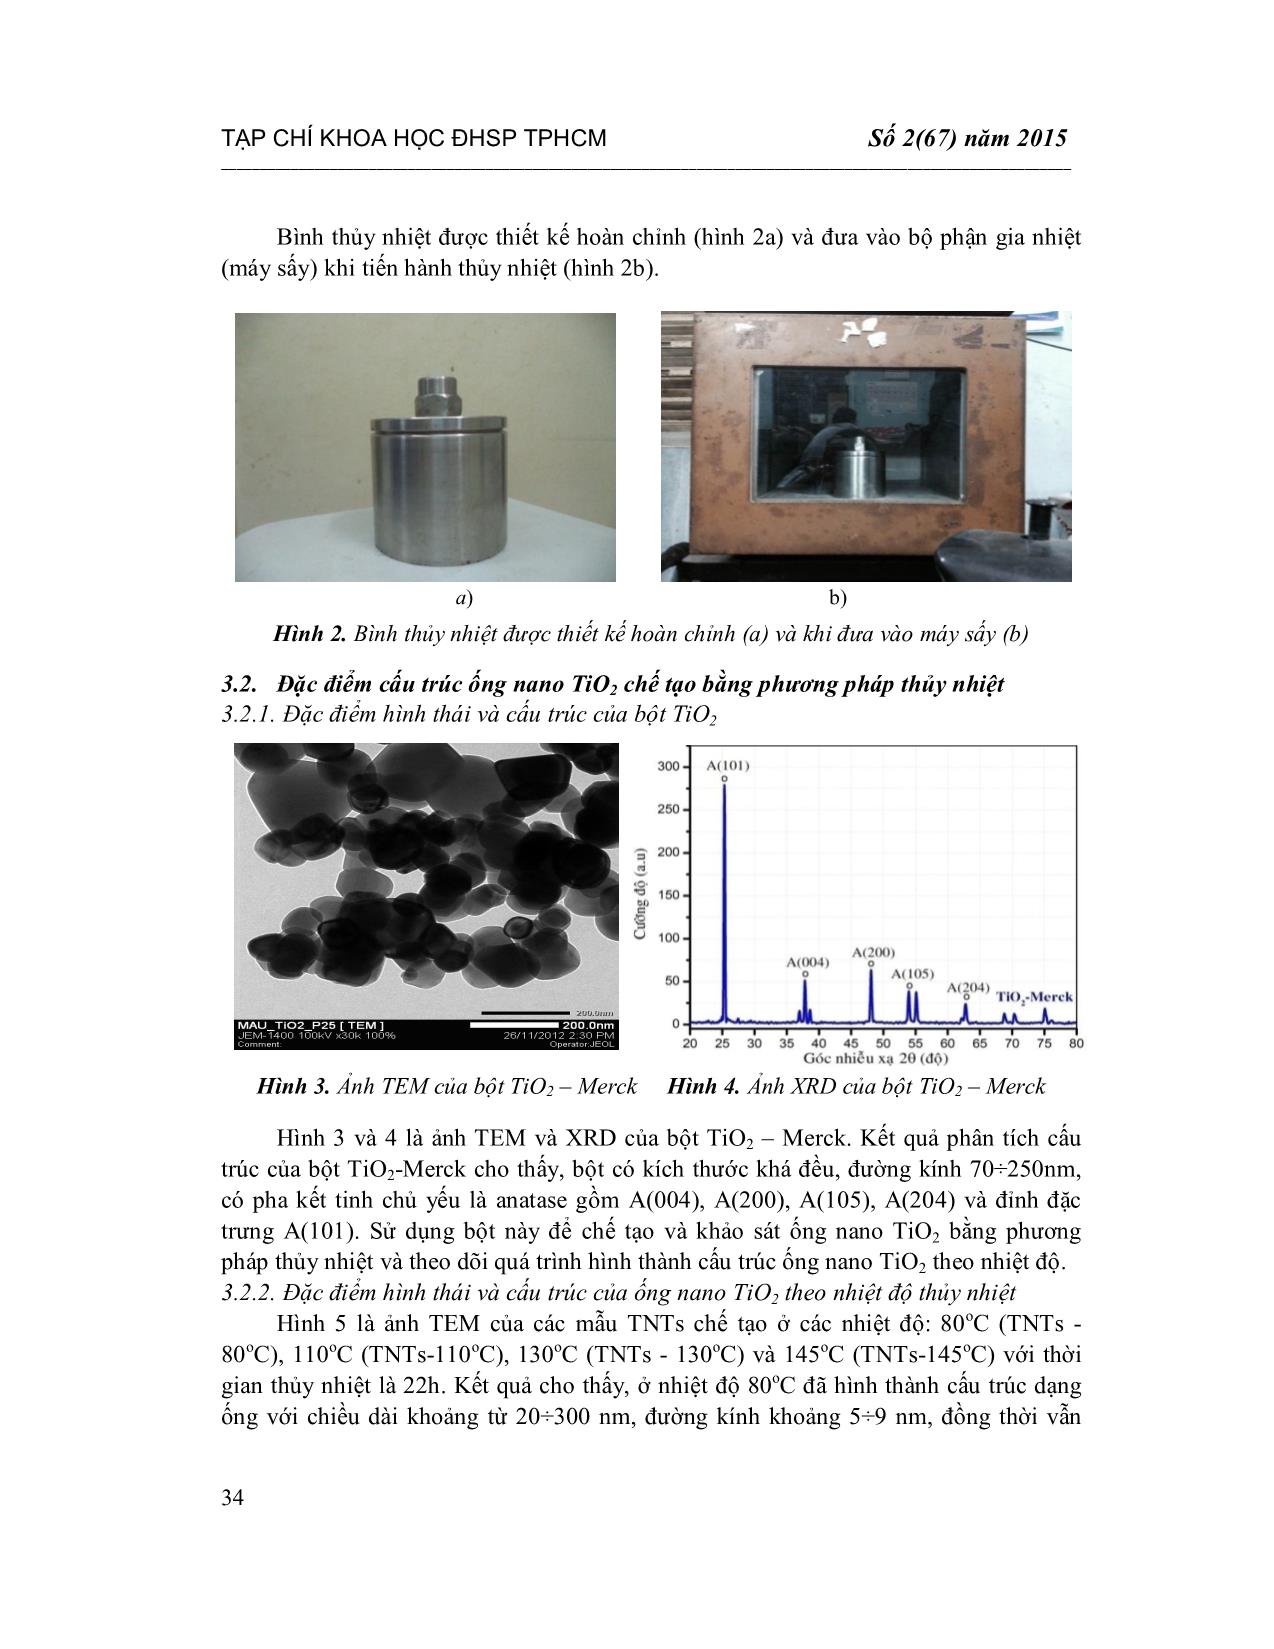 Thiết kế hệ thống thủy nhiệt và chế tạo cấu trúc ống nano TiO2 trang 4